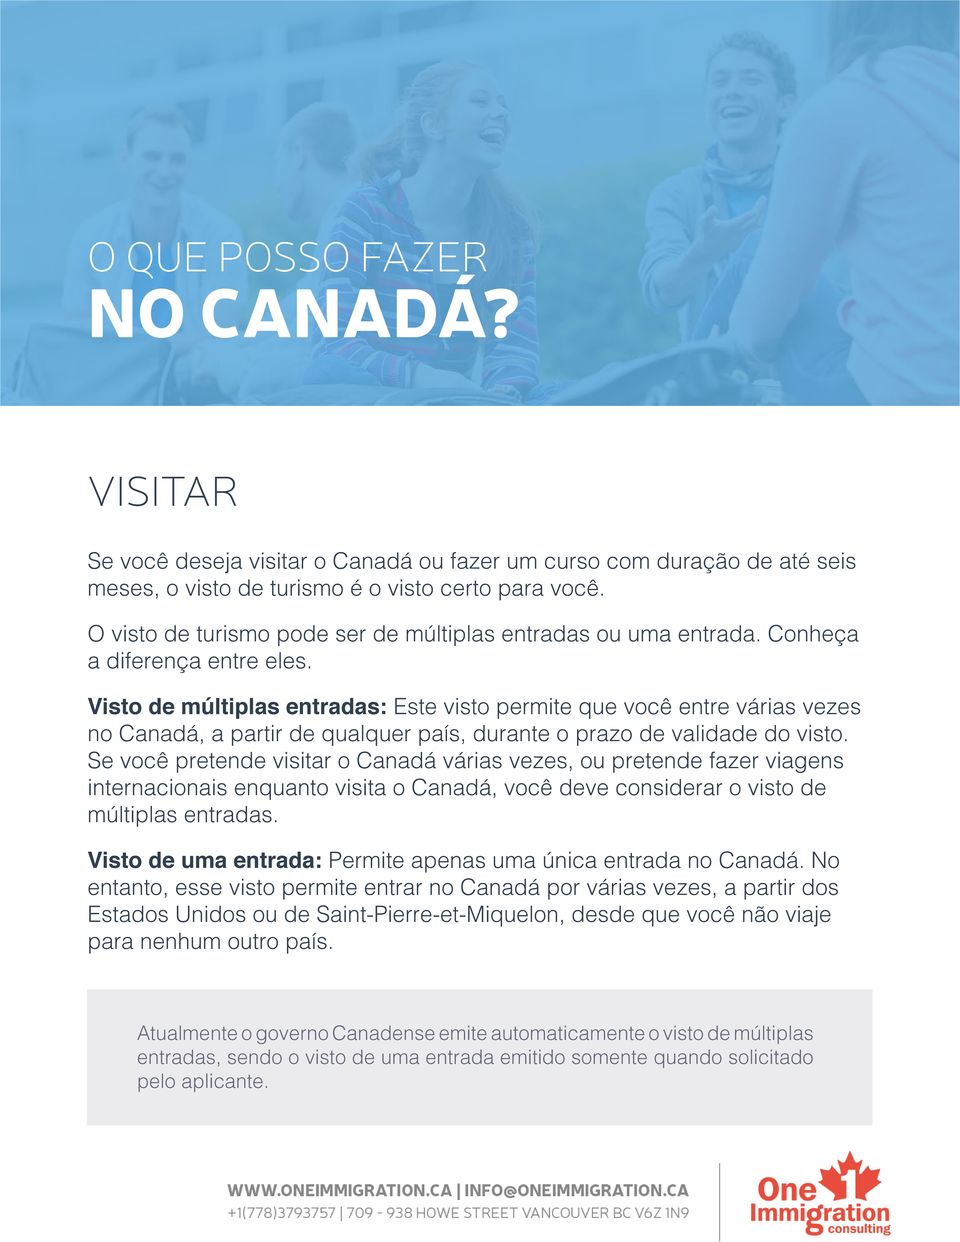 Visto de múltiplas entradas: Este visto permite que você entre várias vezes no Canadá, a partir de qualquer país, durante o prazo de validade do visto.